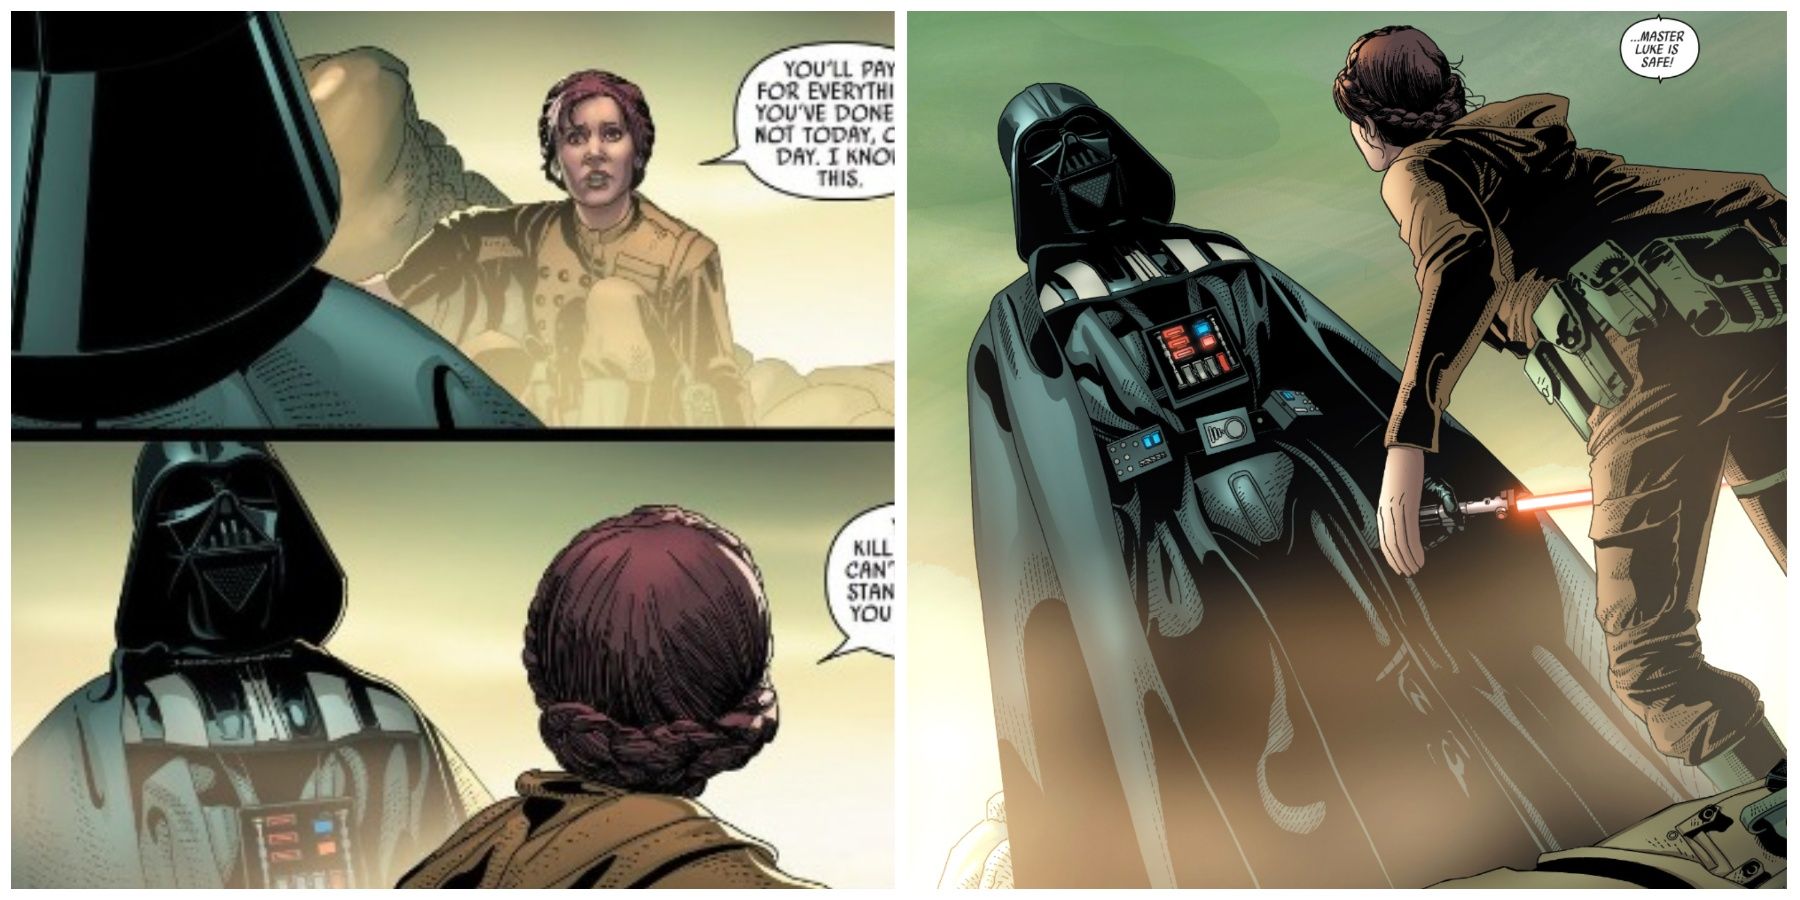 Darth Vader and Leia Organa